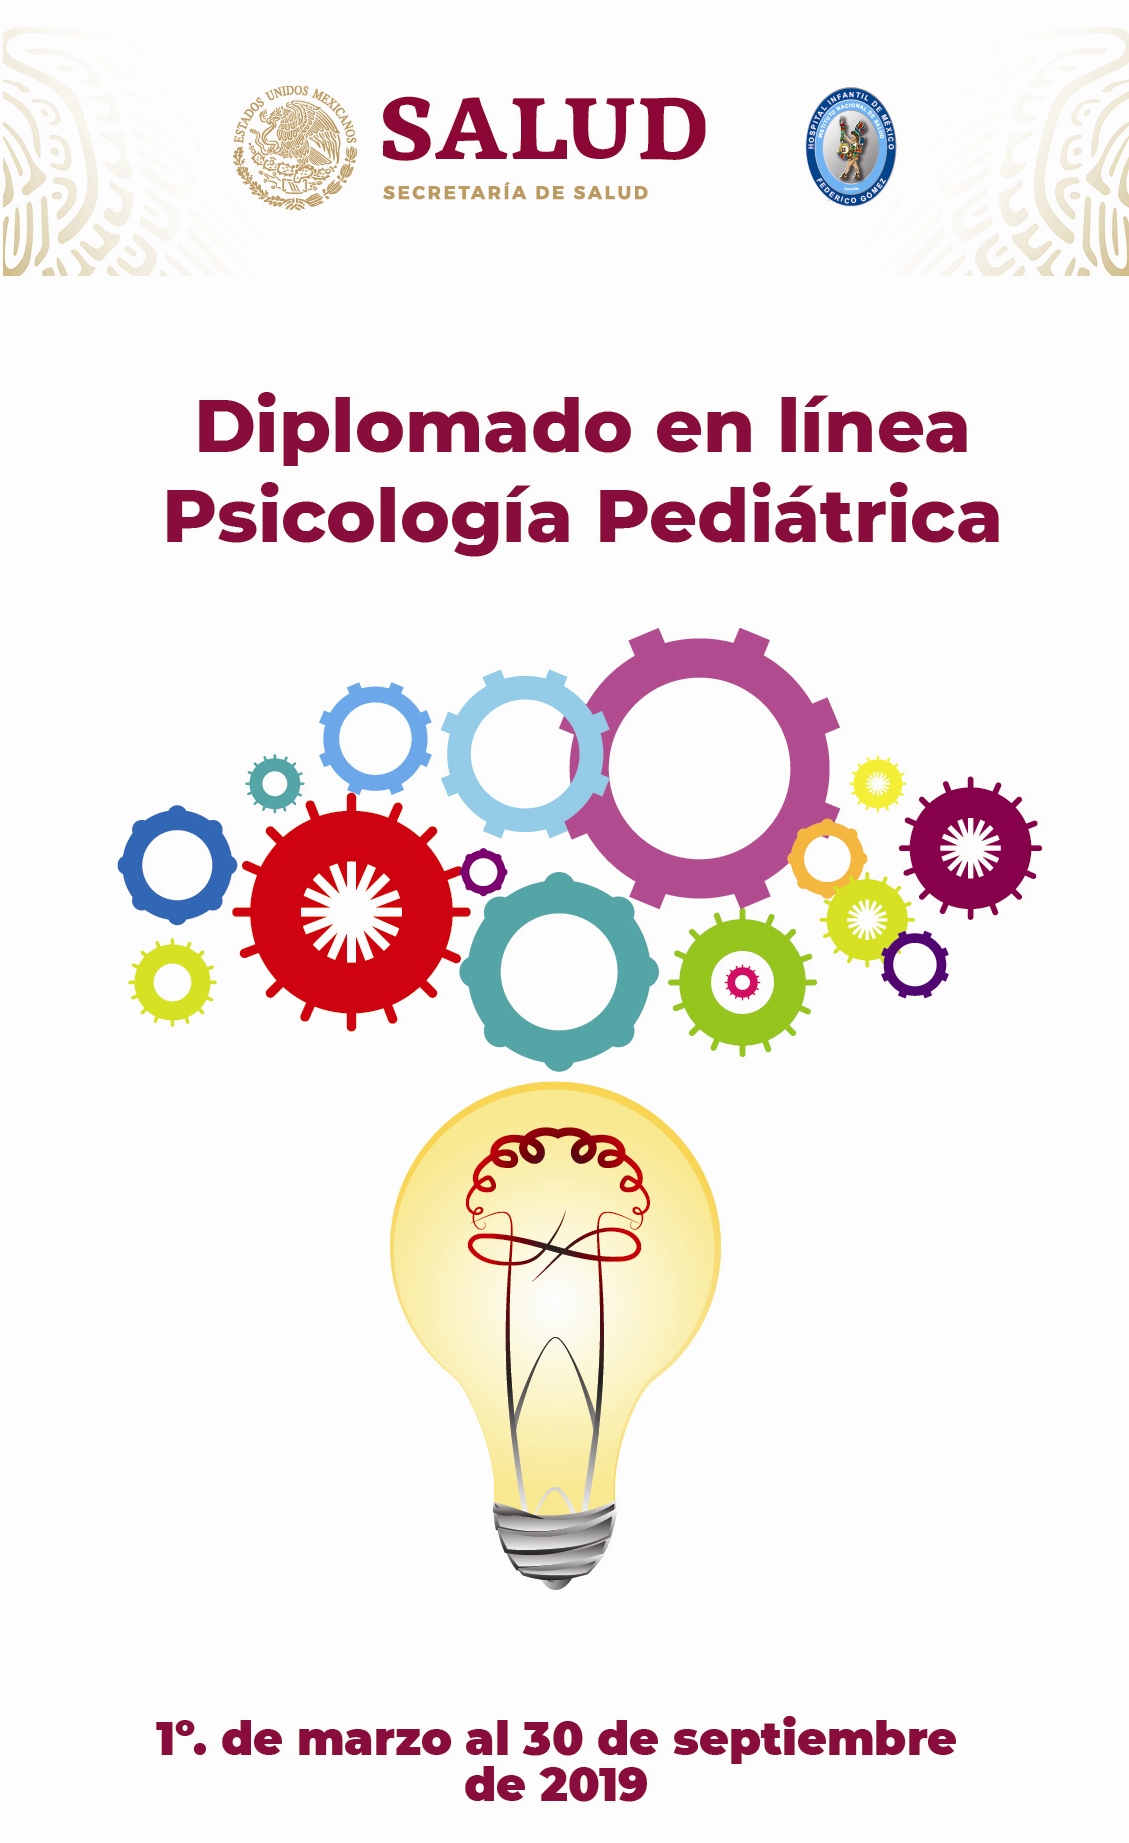 Diplomado en línea Psicología Pediátrica